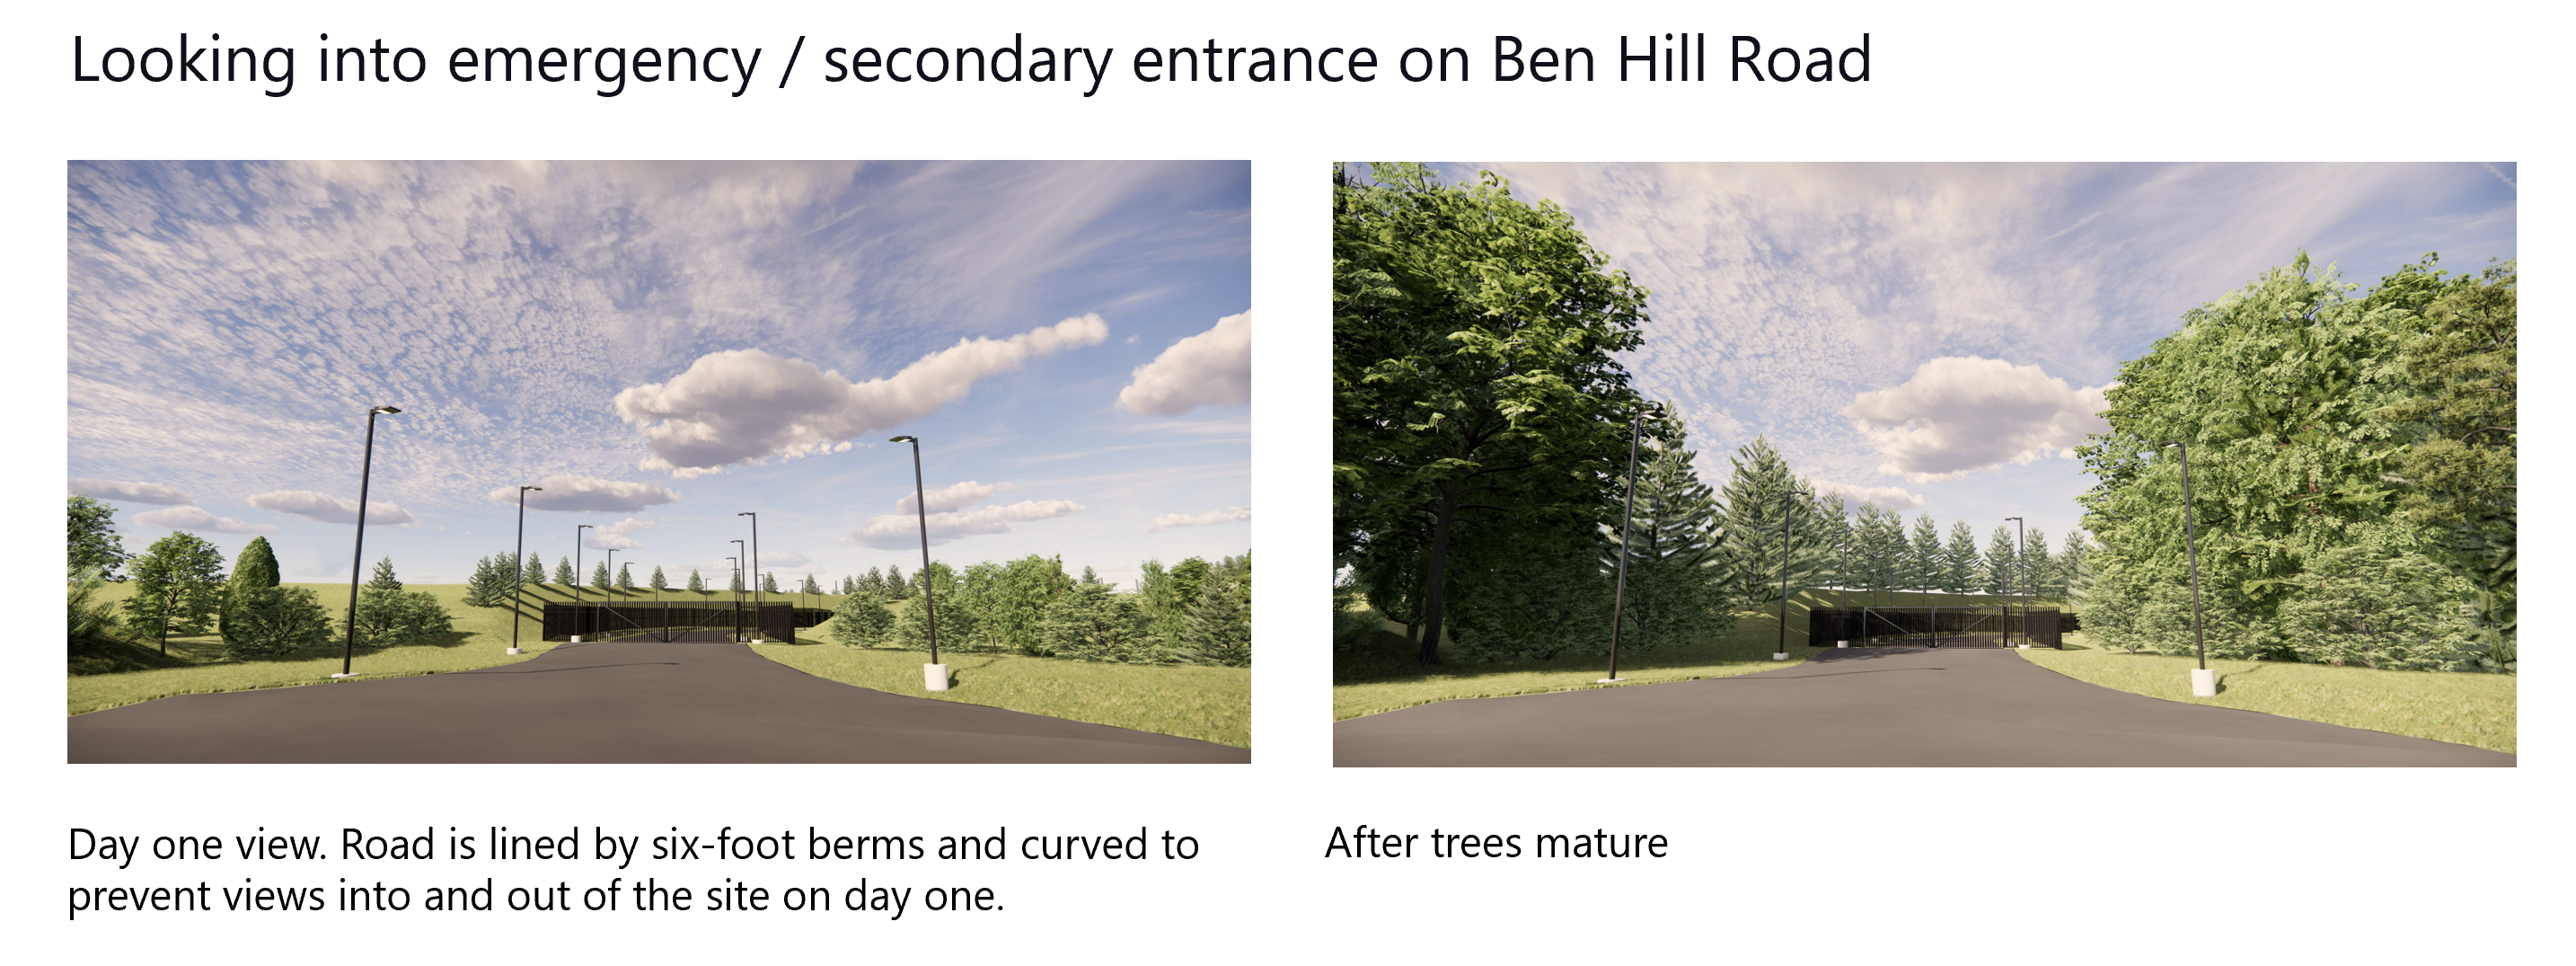 Pohled do nouzového vjezdu na Ben Hill Road